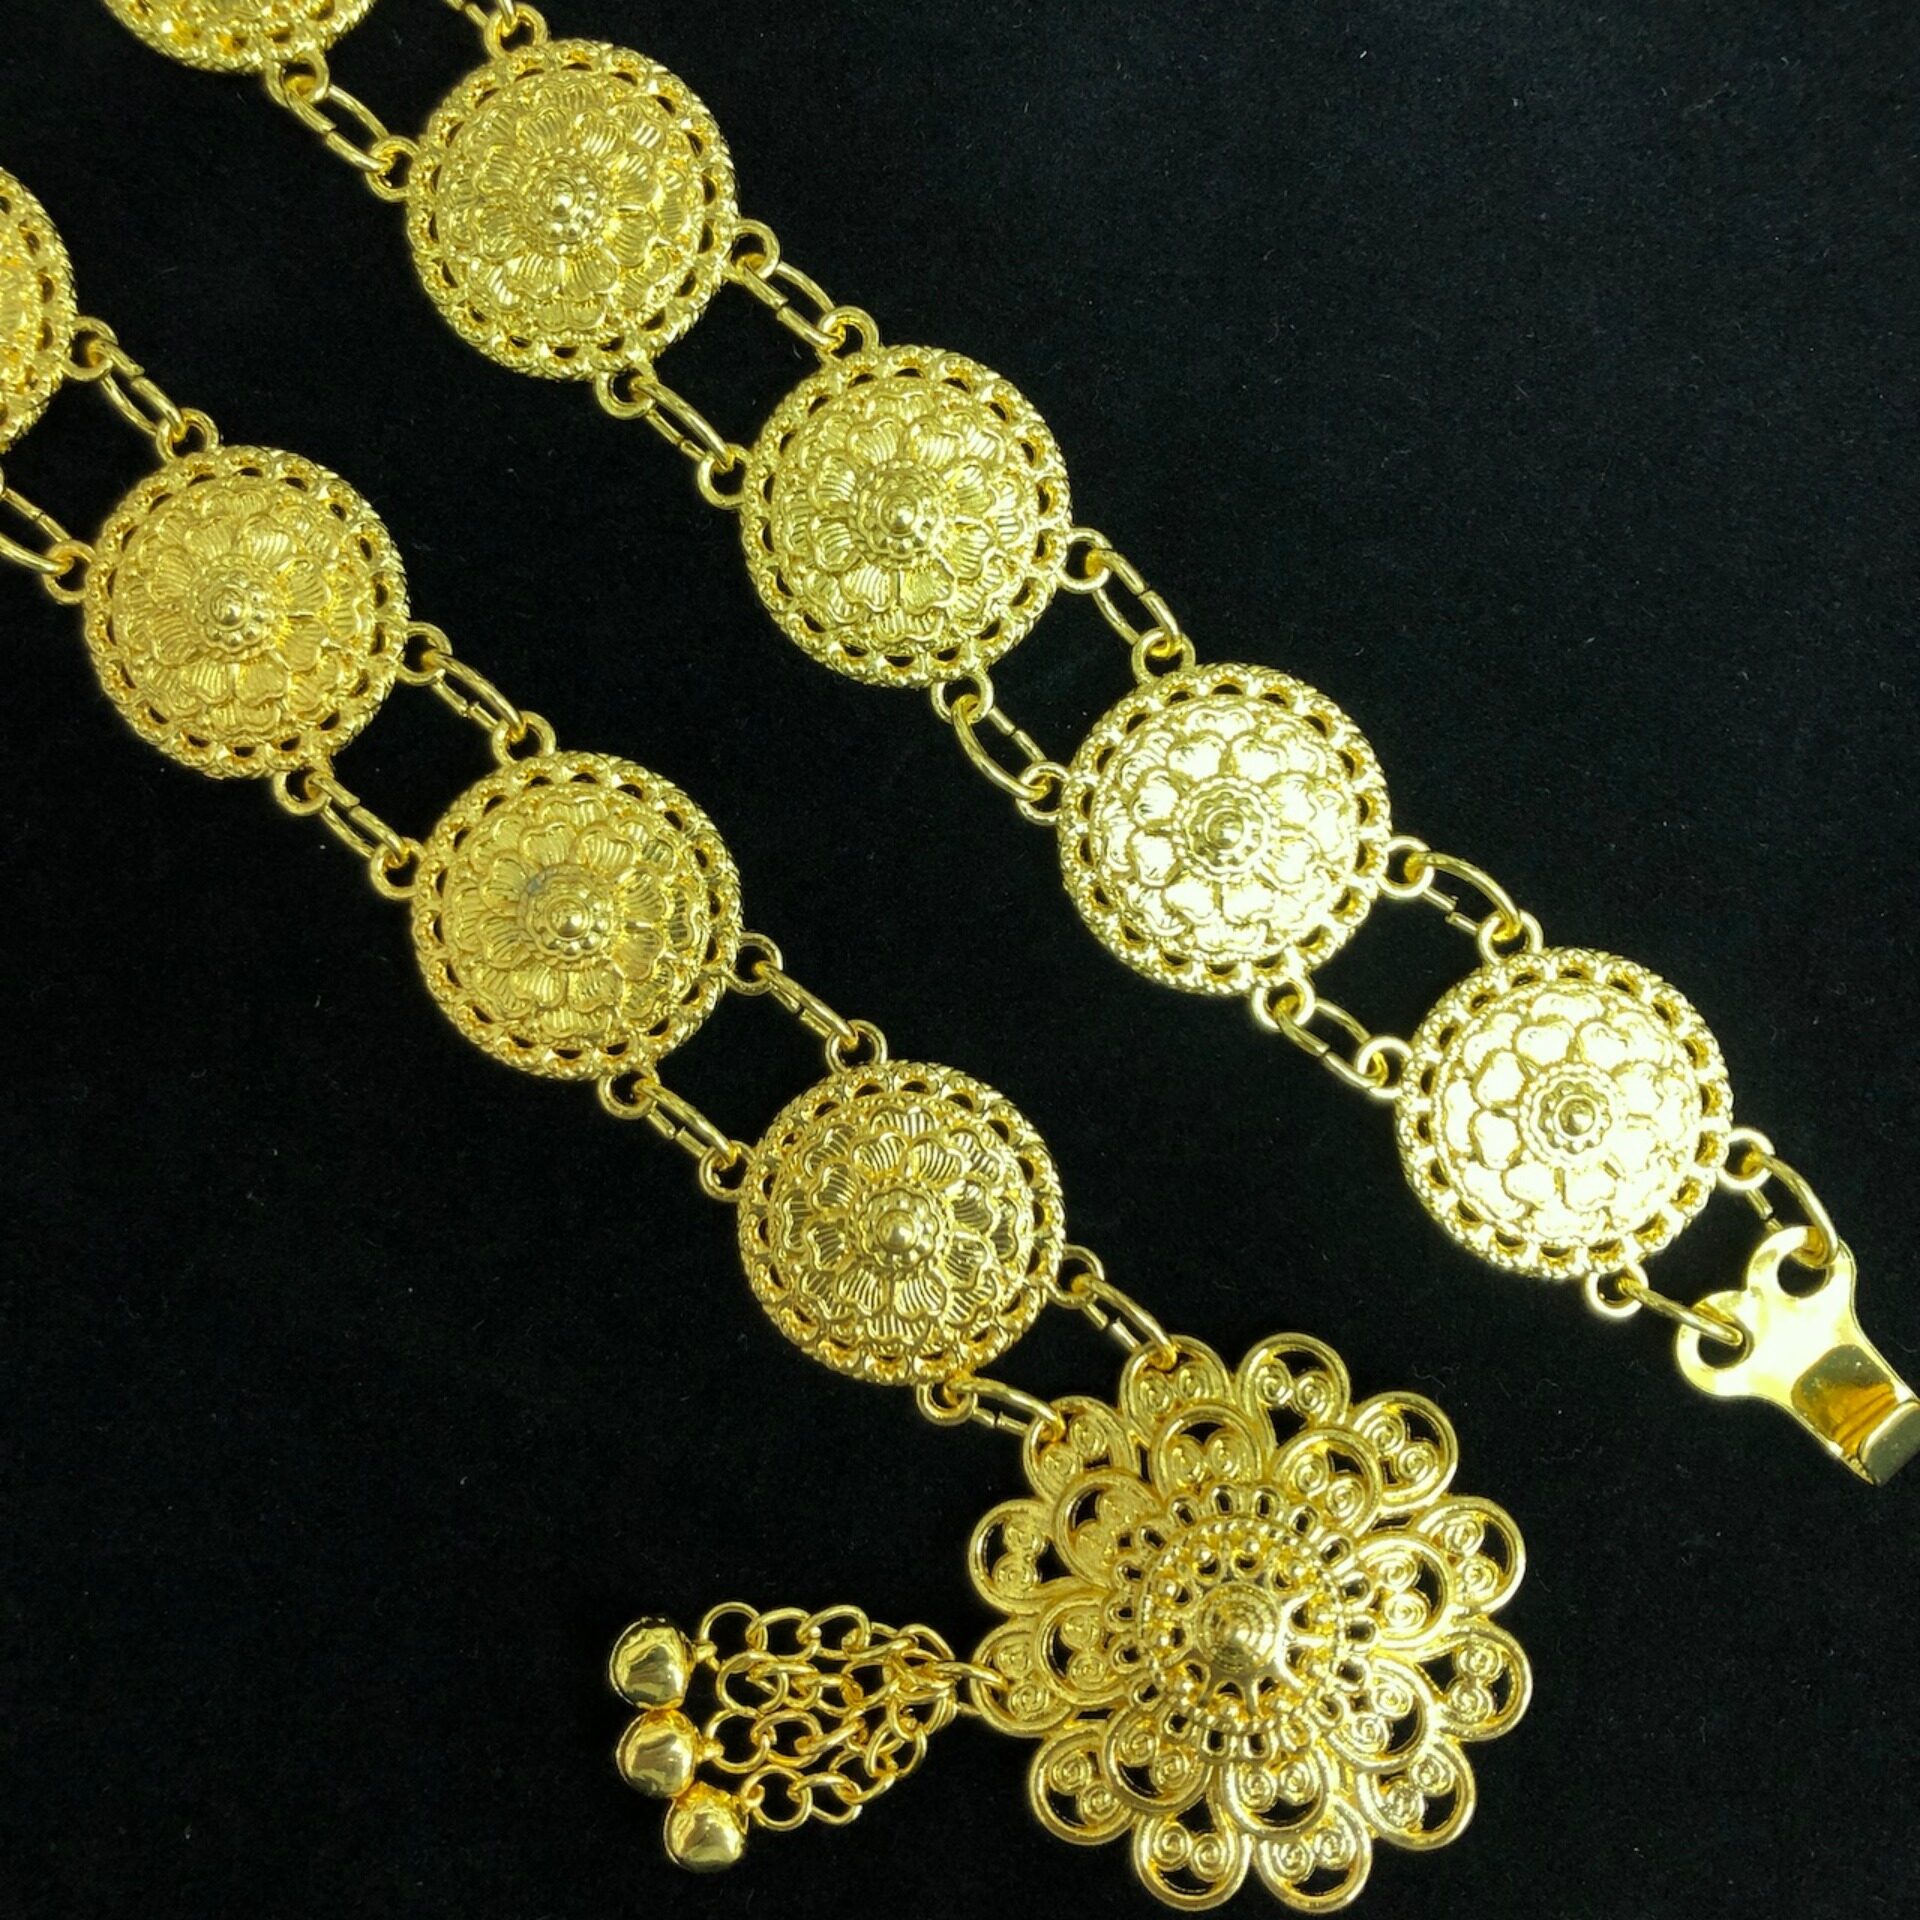 March jewelry เครืองประดับโบราณเข็มขัดดอกไม้อีสานชุดล้านนาไทหัวเข็มขัด สีทอง